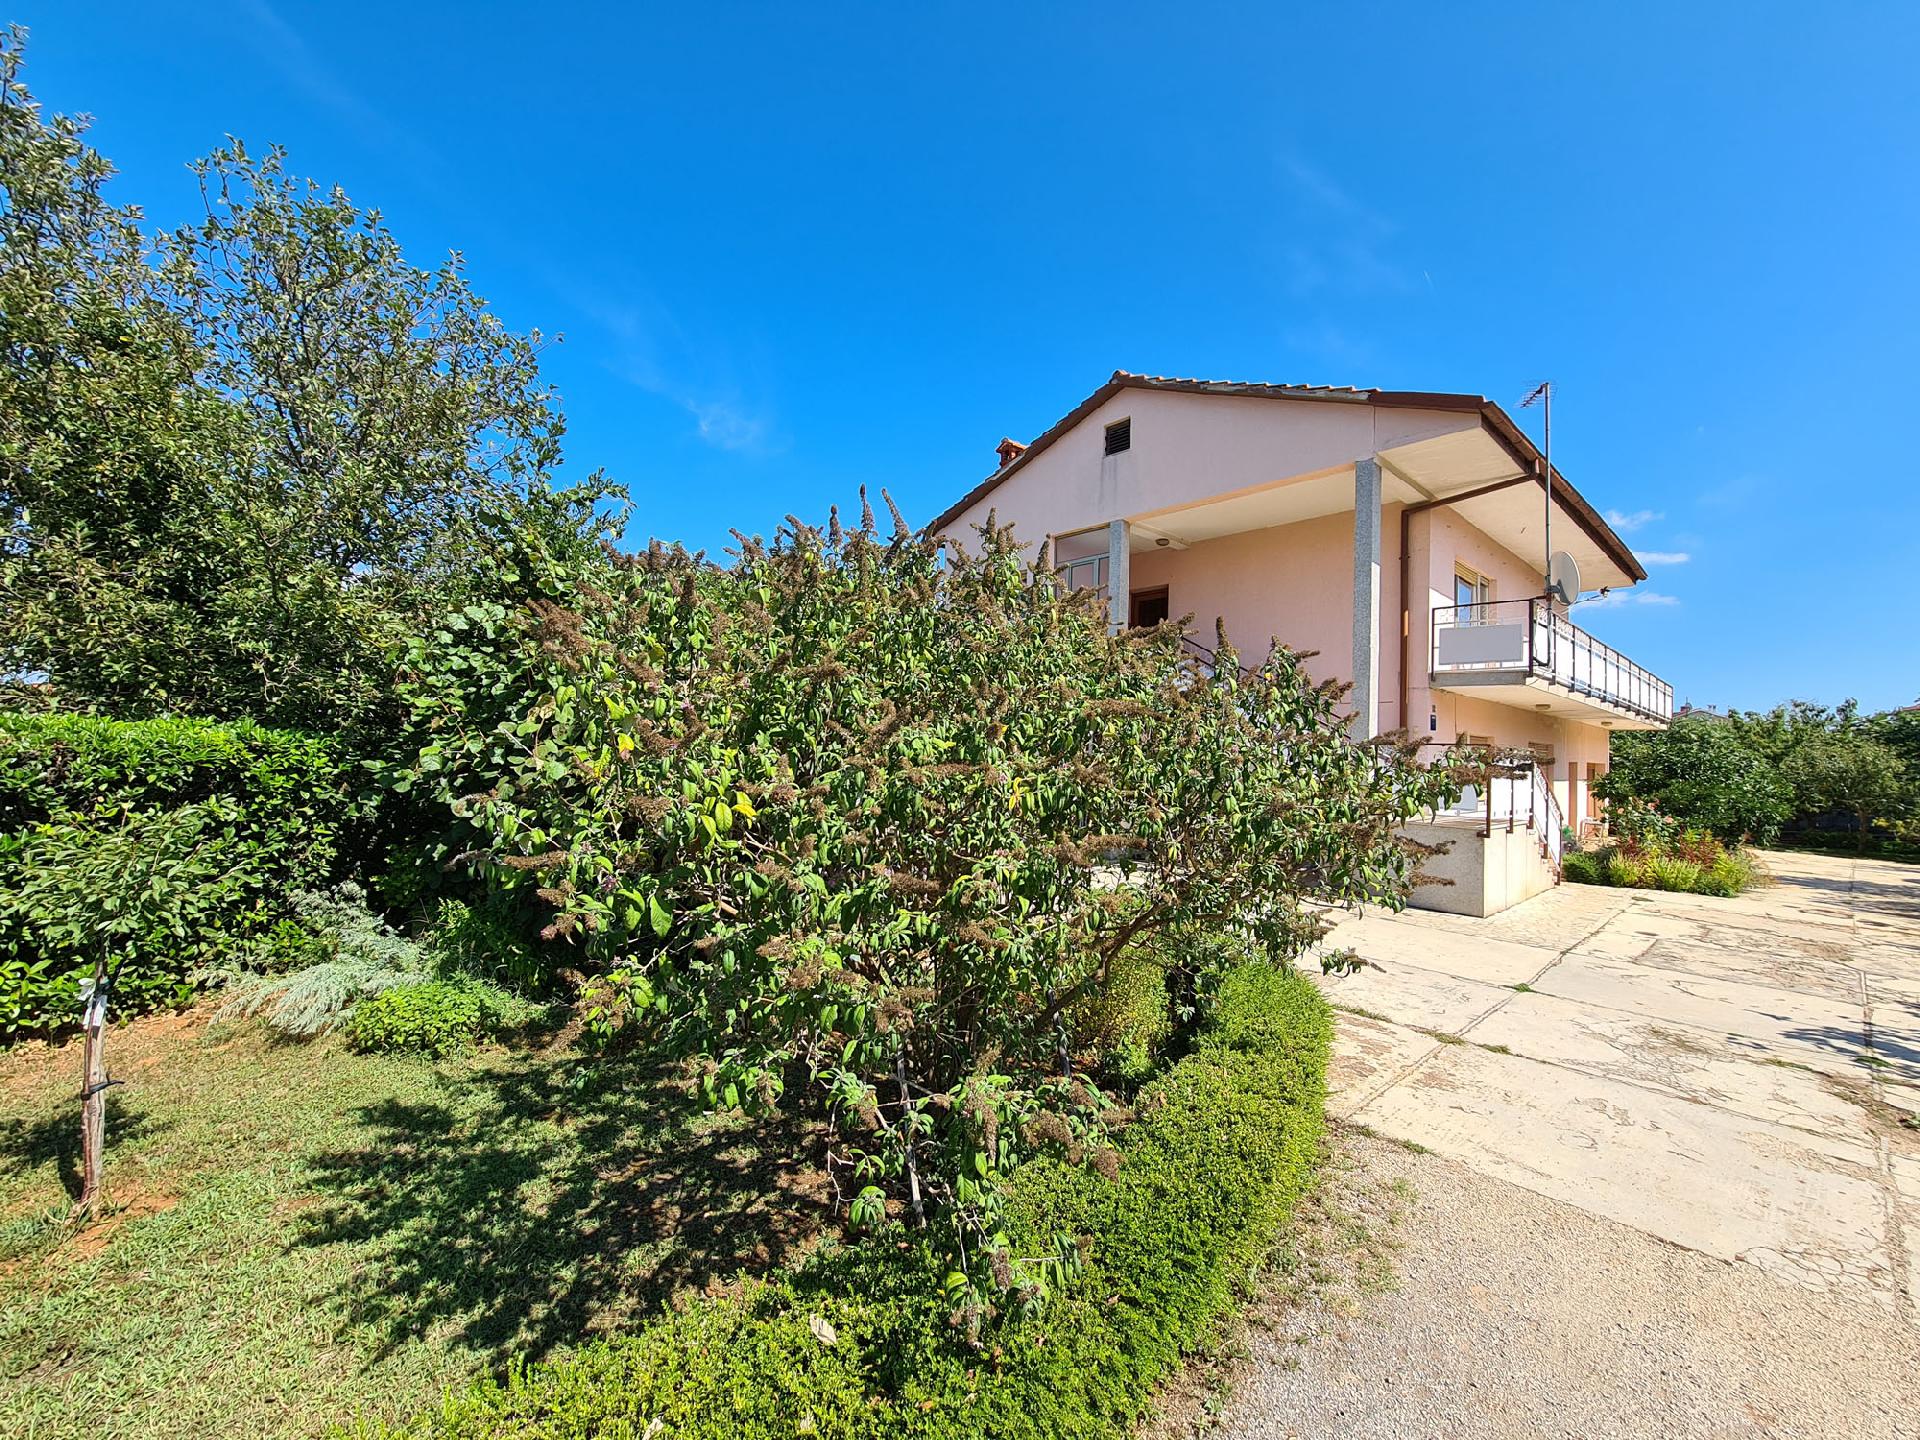 Ferienwohnung für 5 Personen ca. 85 m² i  in Istrien